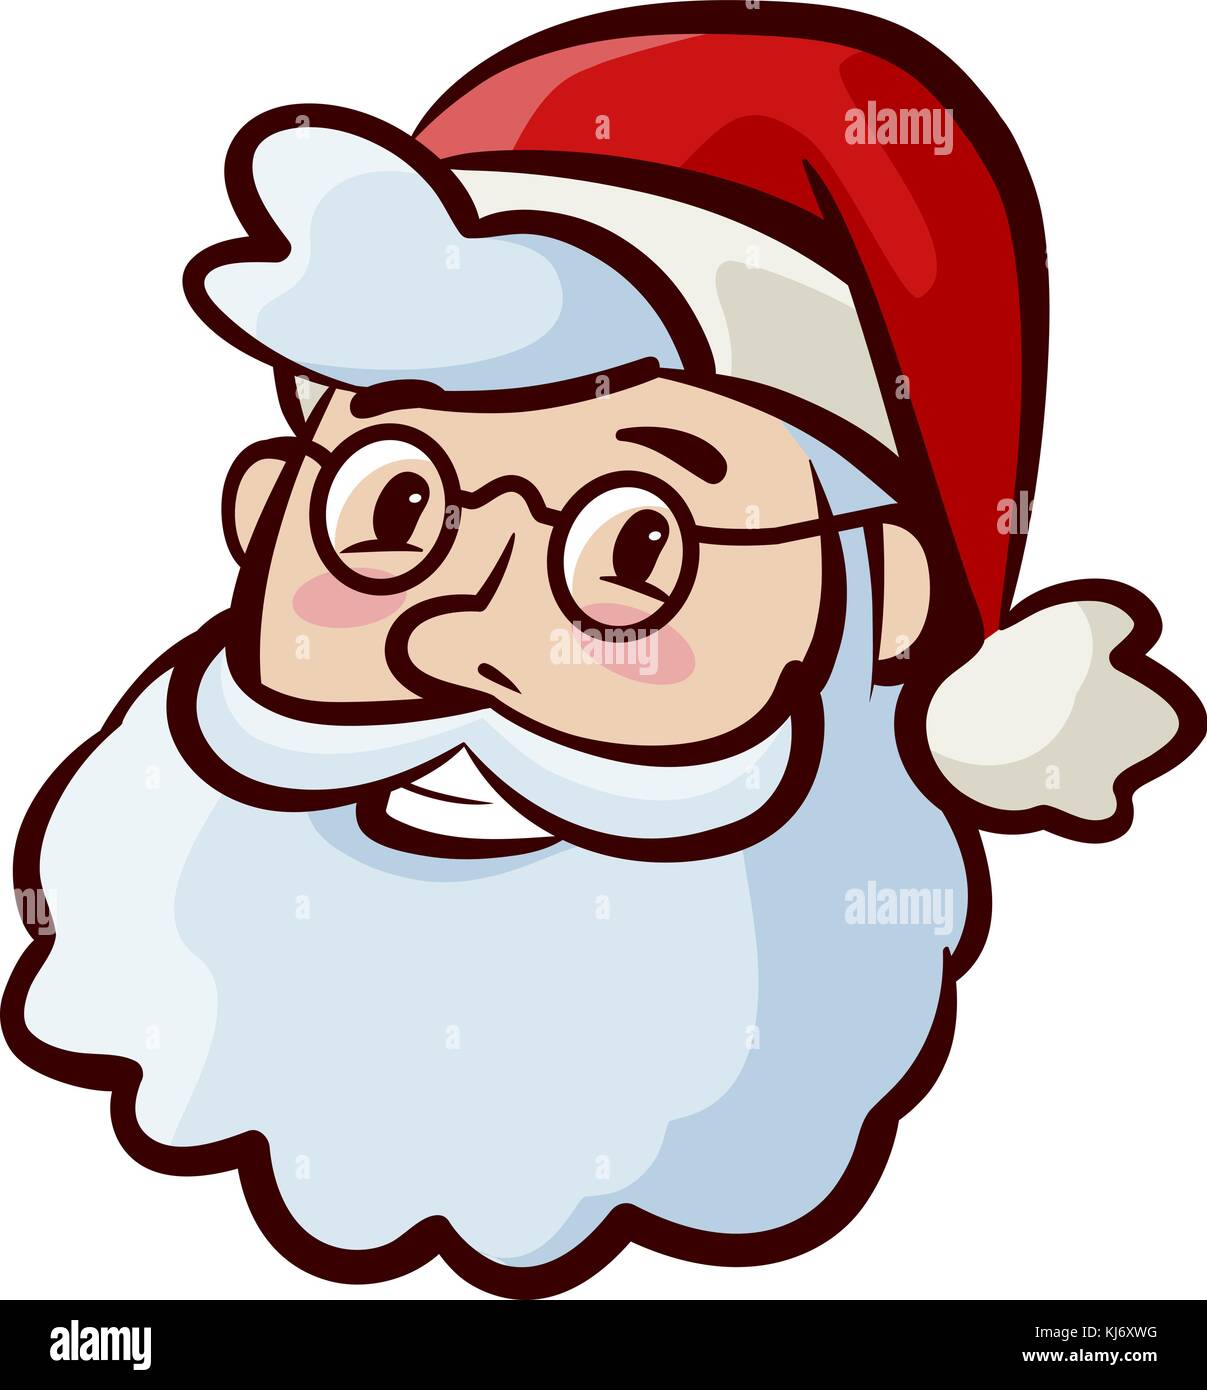 Porträt des glücklichen, süßen Weihnachtsmanns mit Hut. Weihnachten, Weihnachtssymbol. Illustration des Zeichentrickvektors Stock Vektor